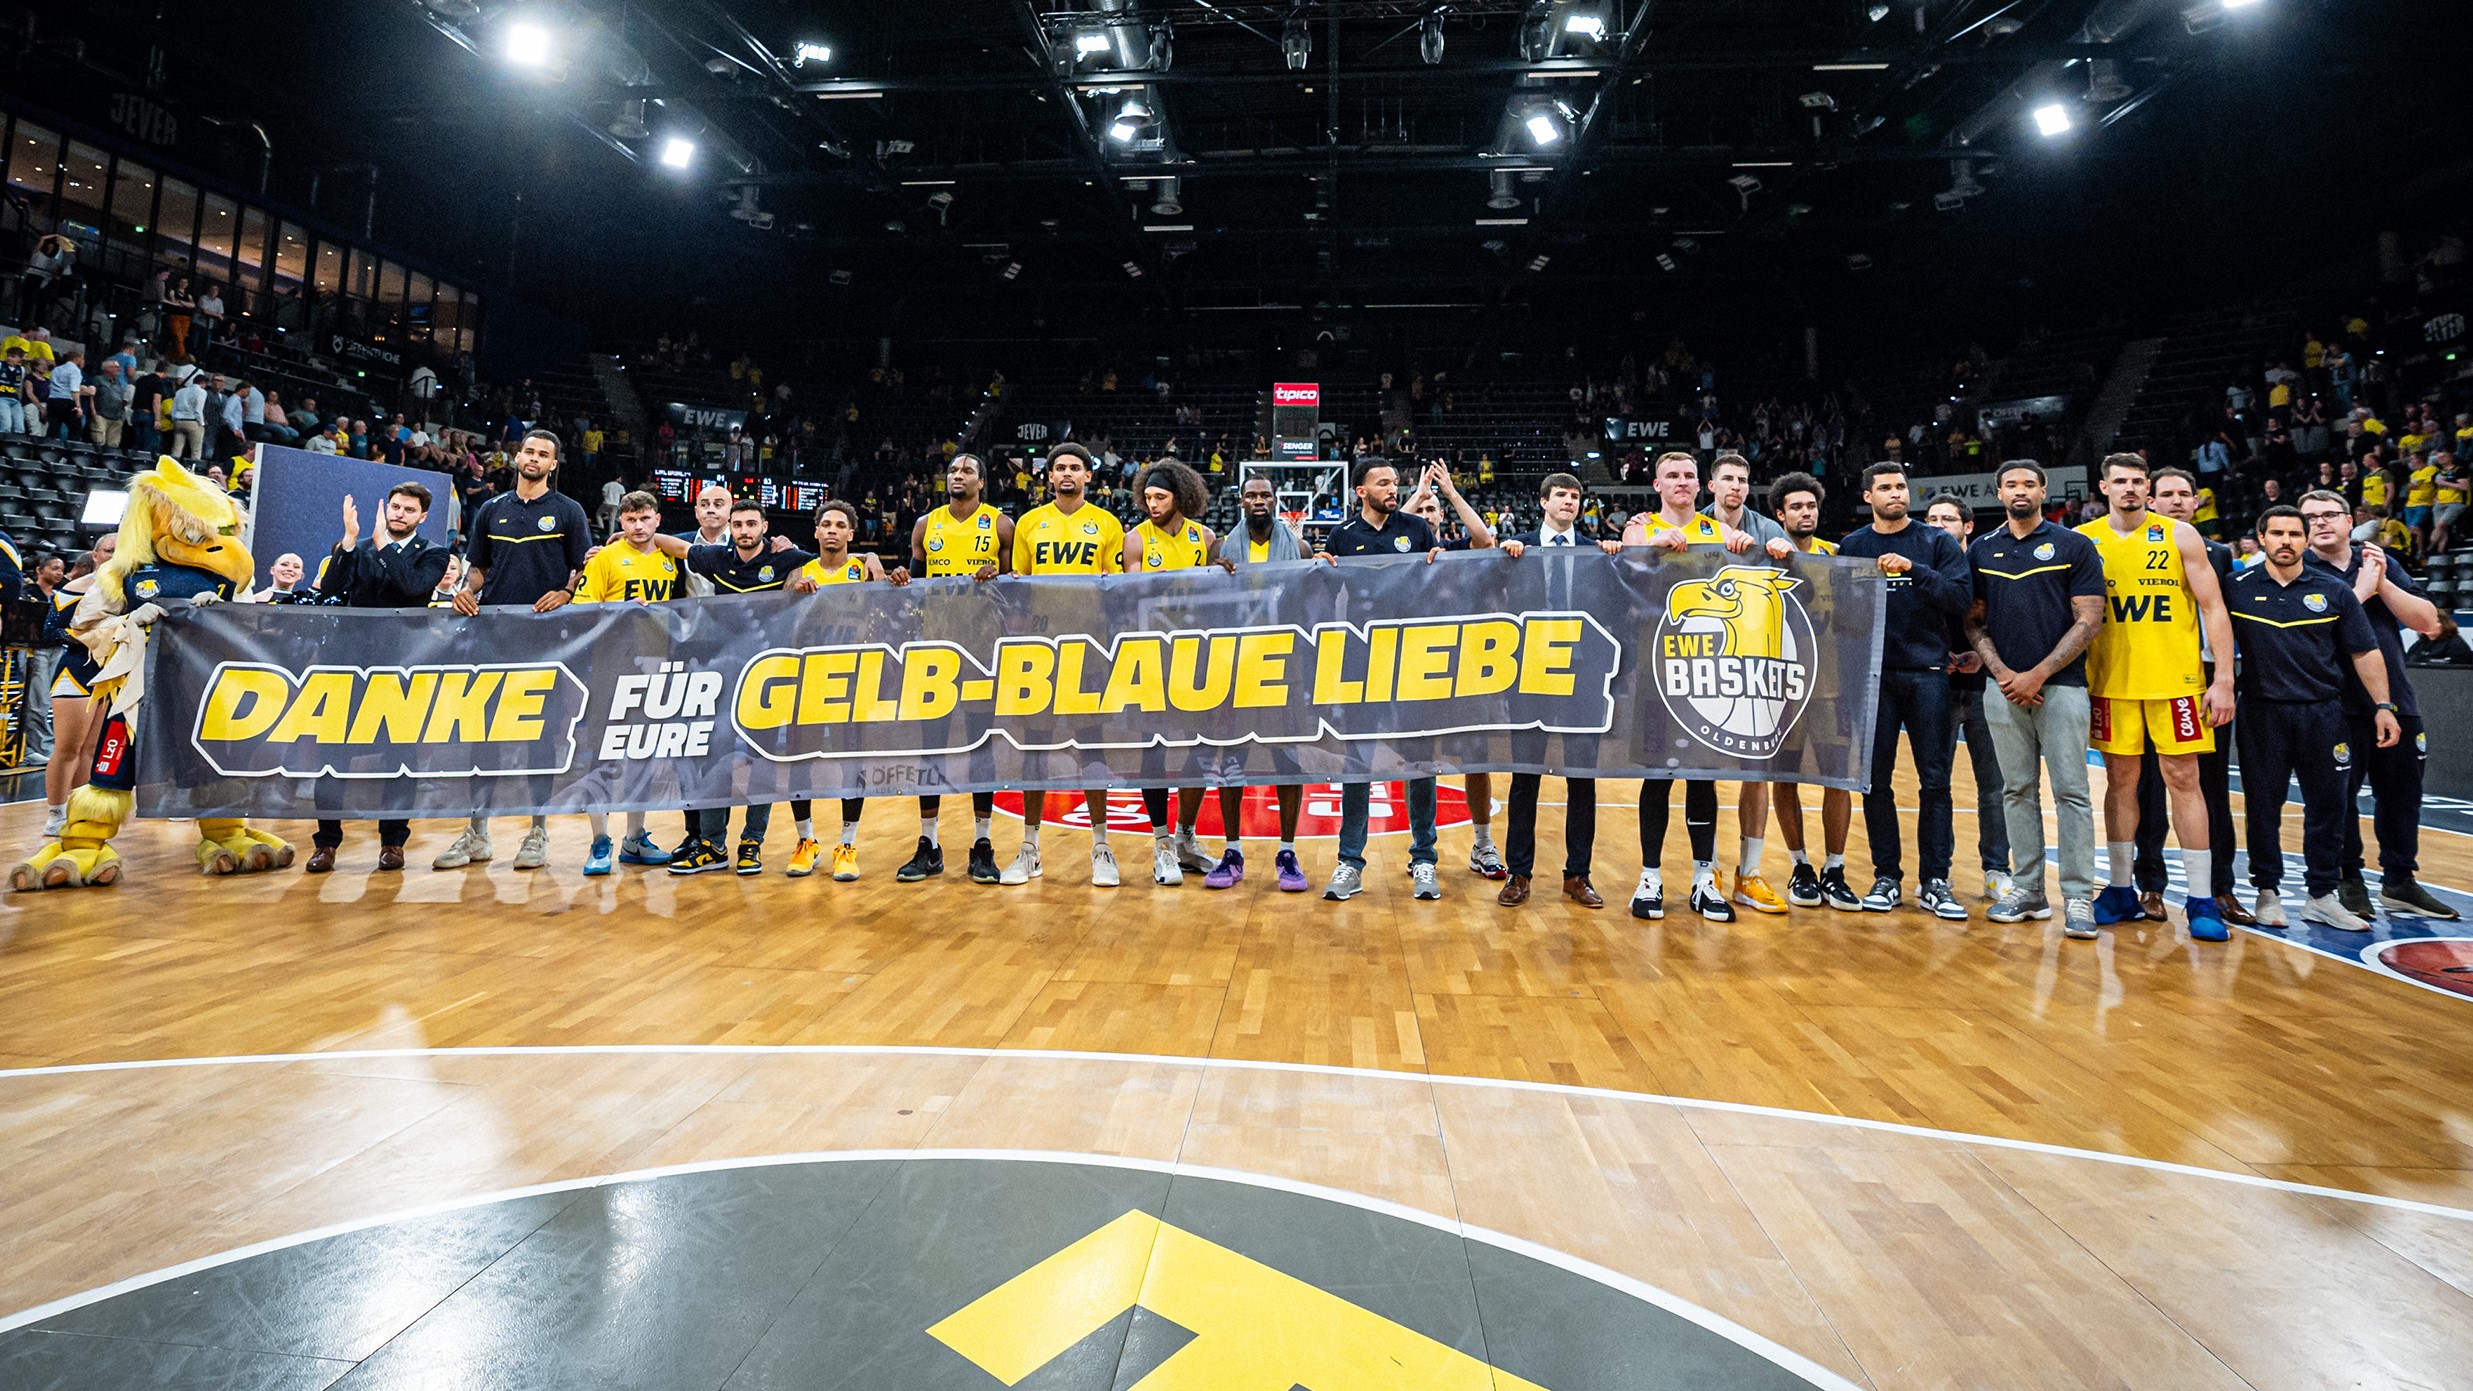 EWE Baskets scheitern an Hamburg: Das passende Ende einer merkwürdigen Saison